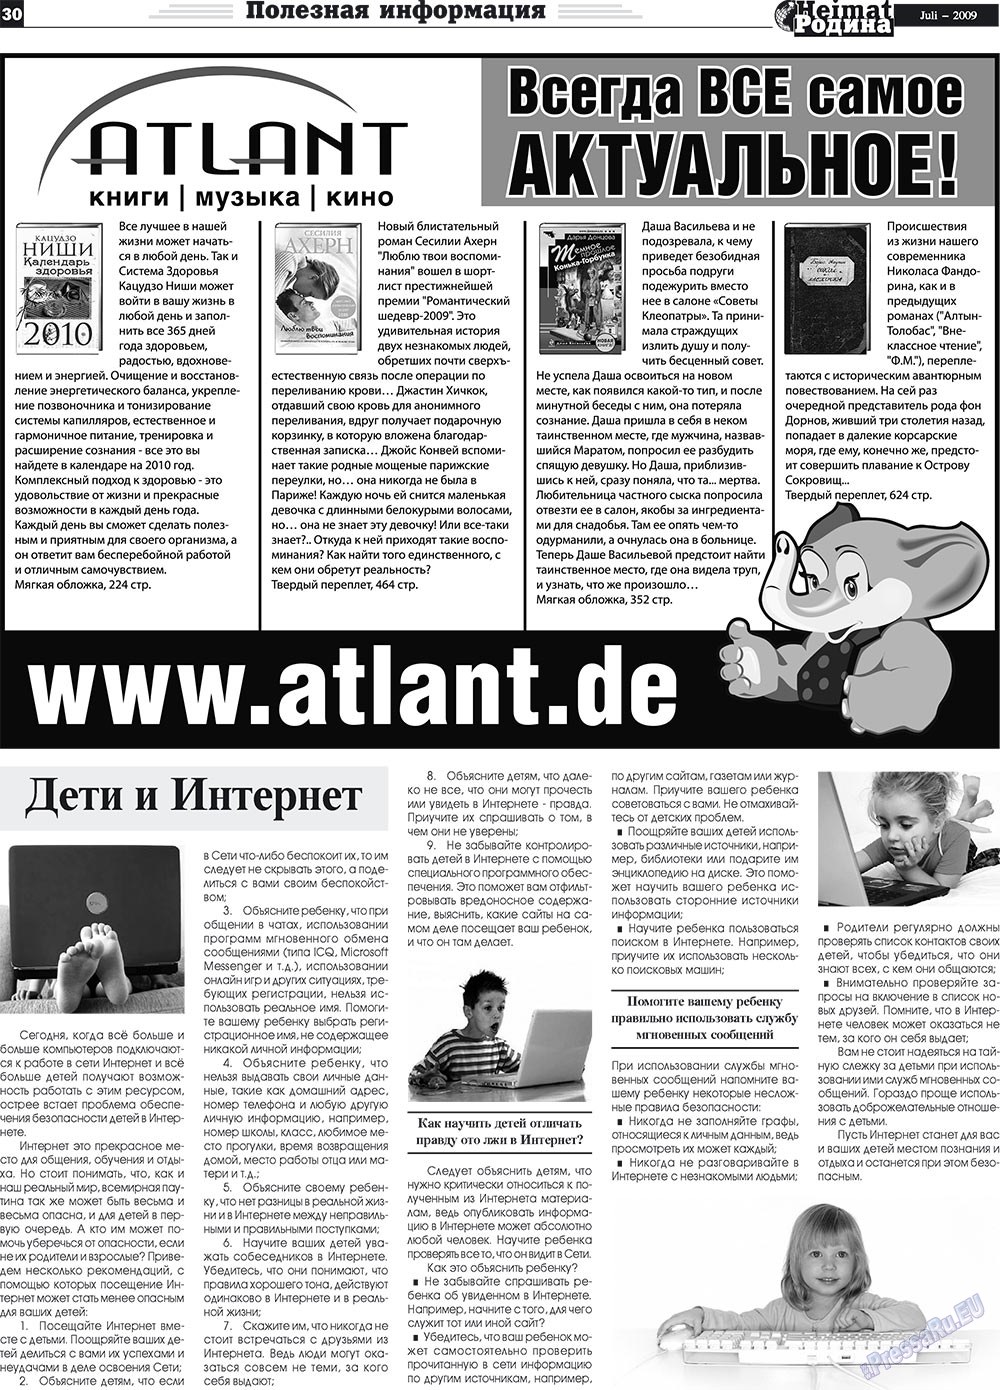 Heimat-Родина (газета). 2009 год, номер 7, стр. 30